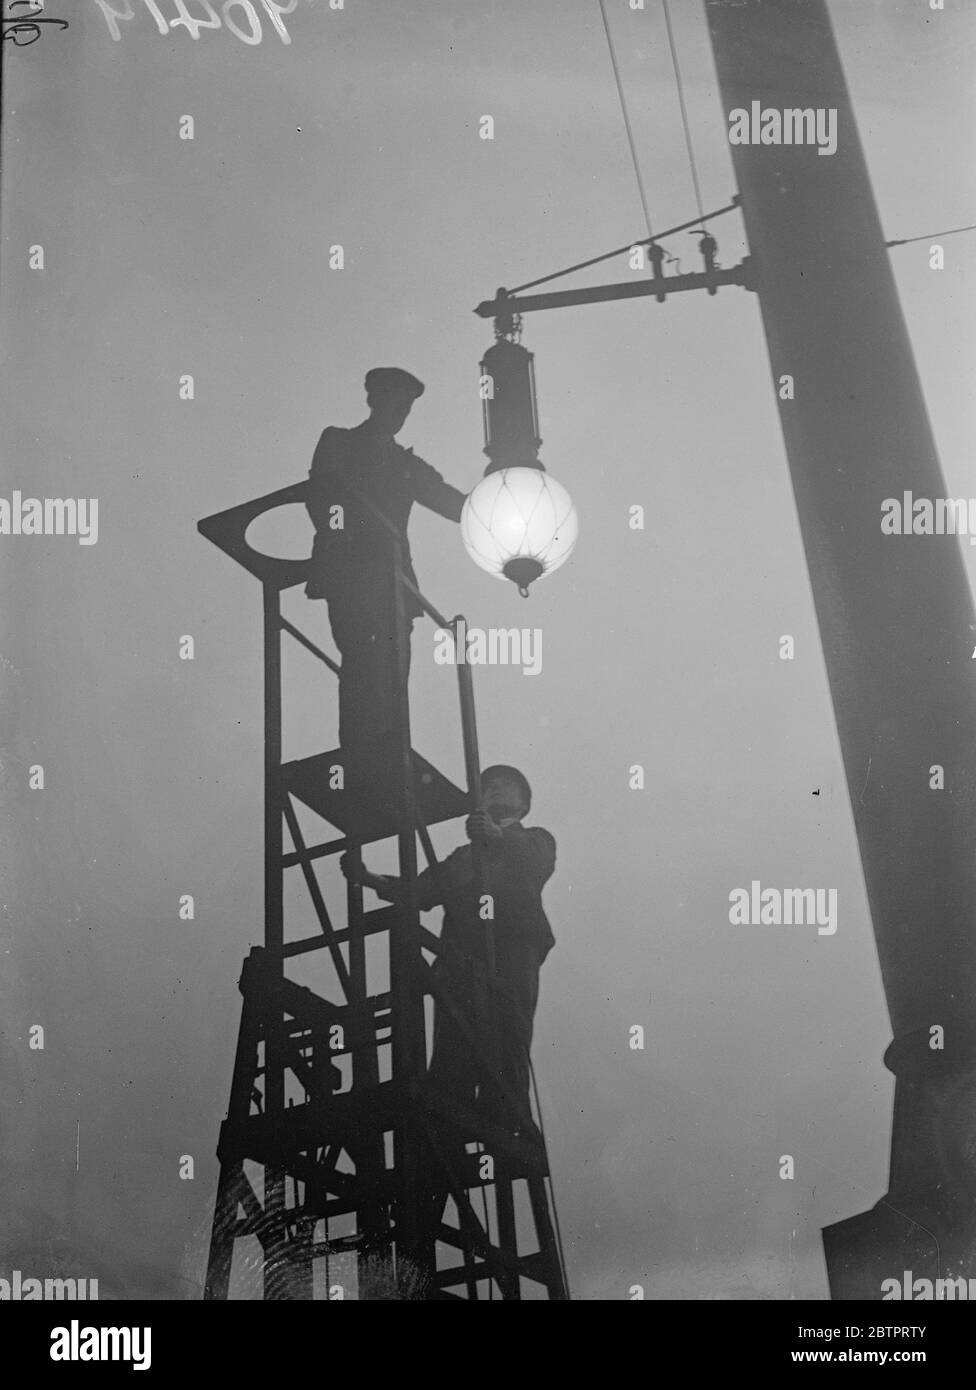 La nebbia rallenta, Londra. Migliaia di londinesi sono stati tenuti in cammino per lavorare dalla fitta nebbia bianca che ha posto i servizi di trasporto. Spettacoli fotografici, operai si sono sghischiati mentre presenziavano ad una lampada nel buio della stazione di Liverpool Street. 18 ottobre 1937 Foto Stock